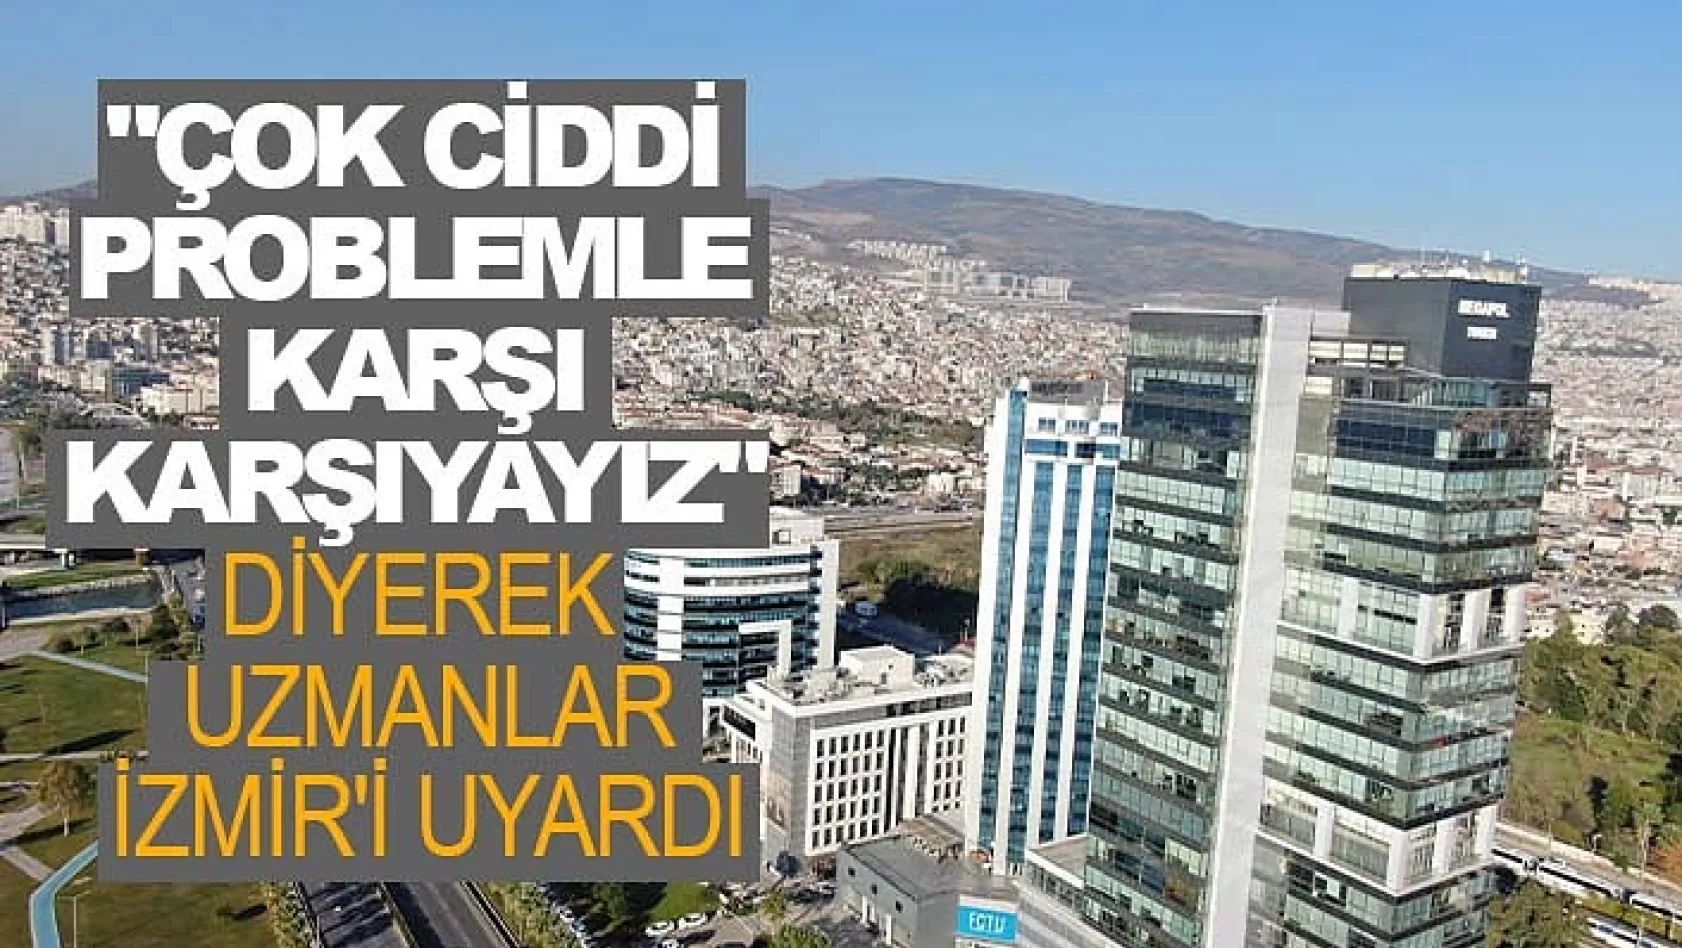 Uzmanlar İzmir'i uyardı: "Çok ciddi problemle karşı karşıyayız"